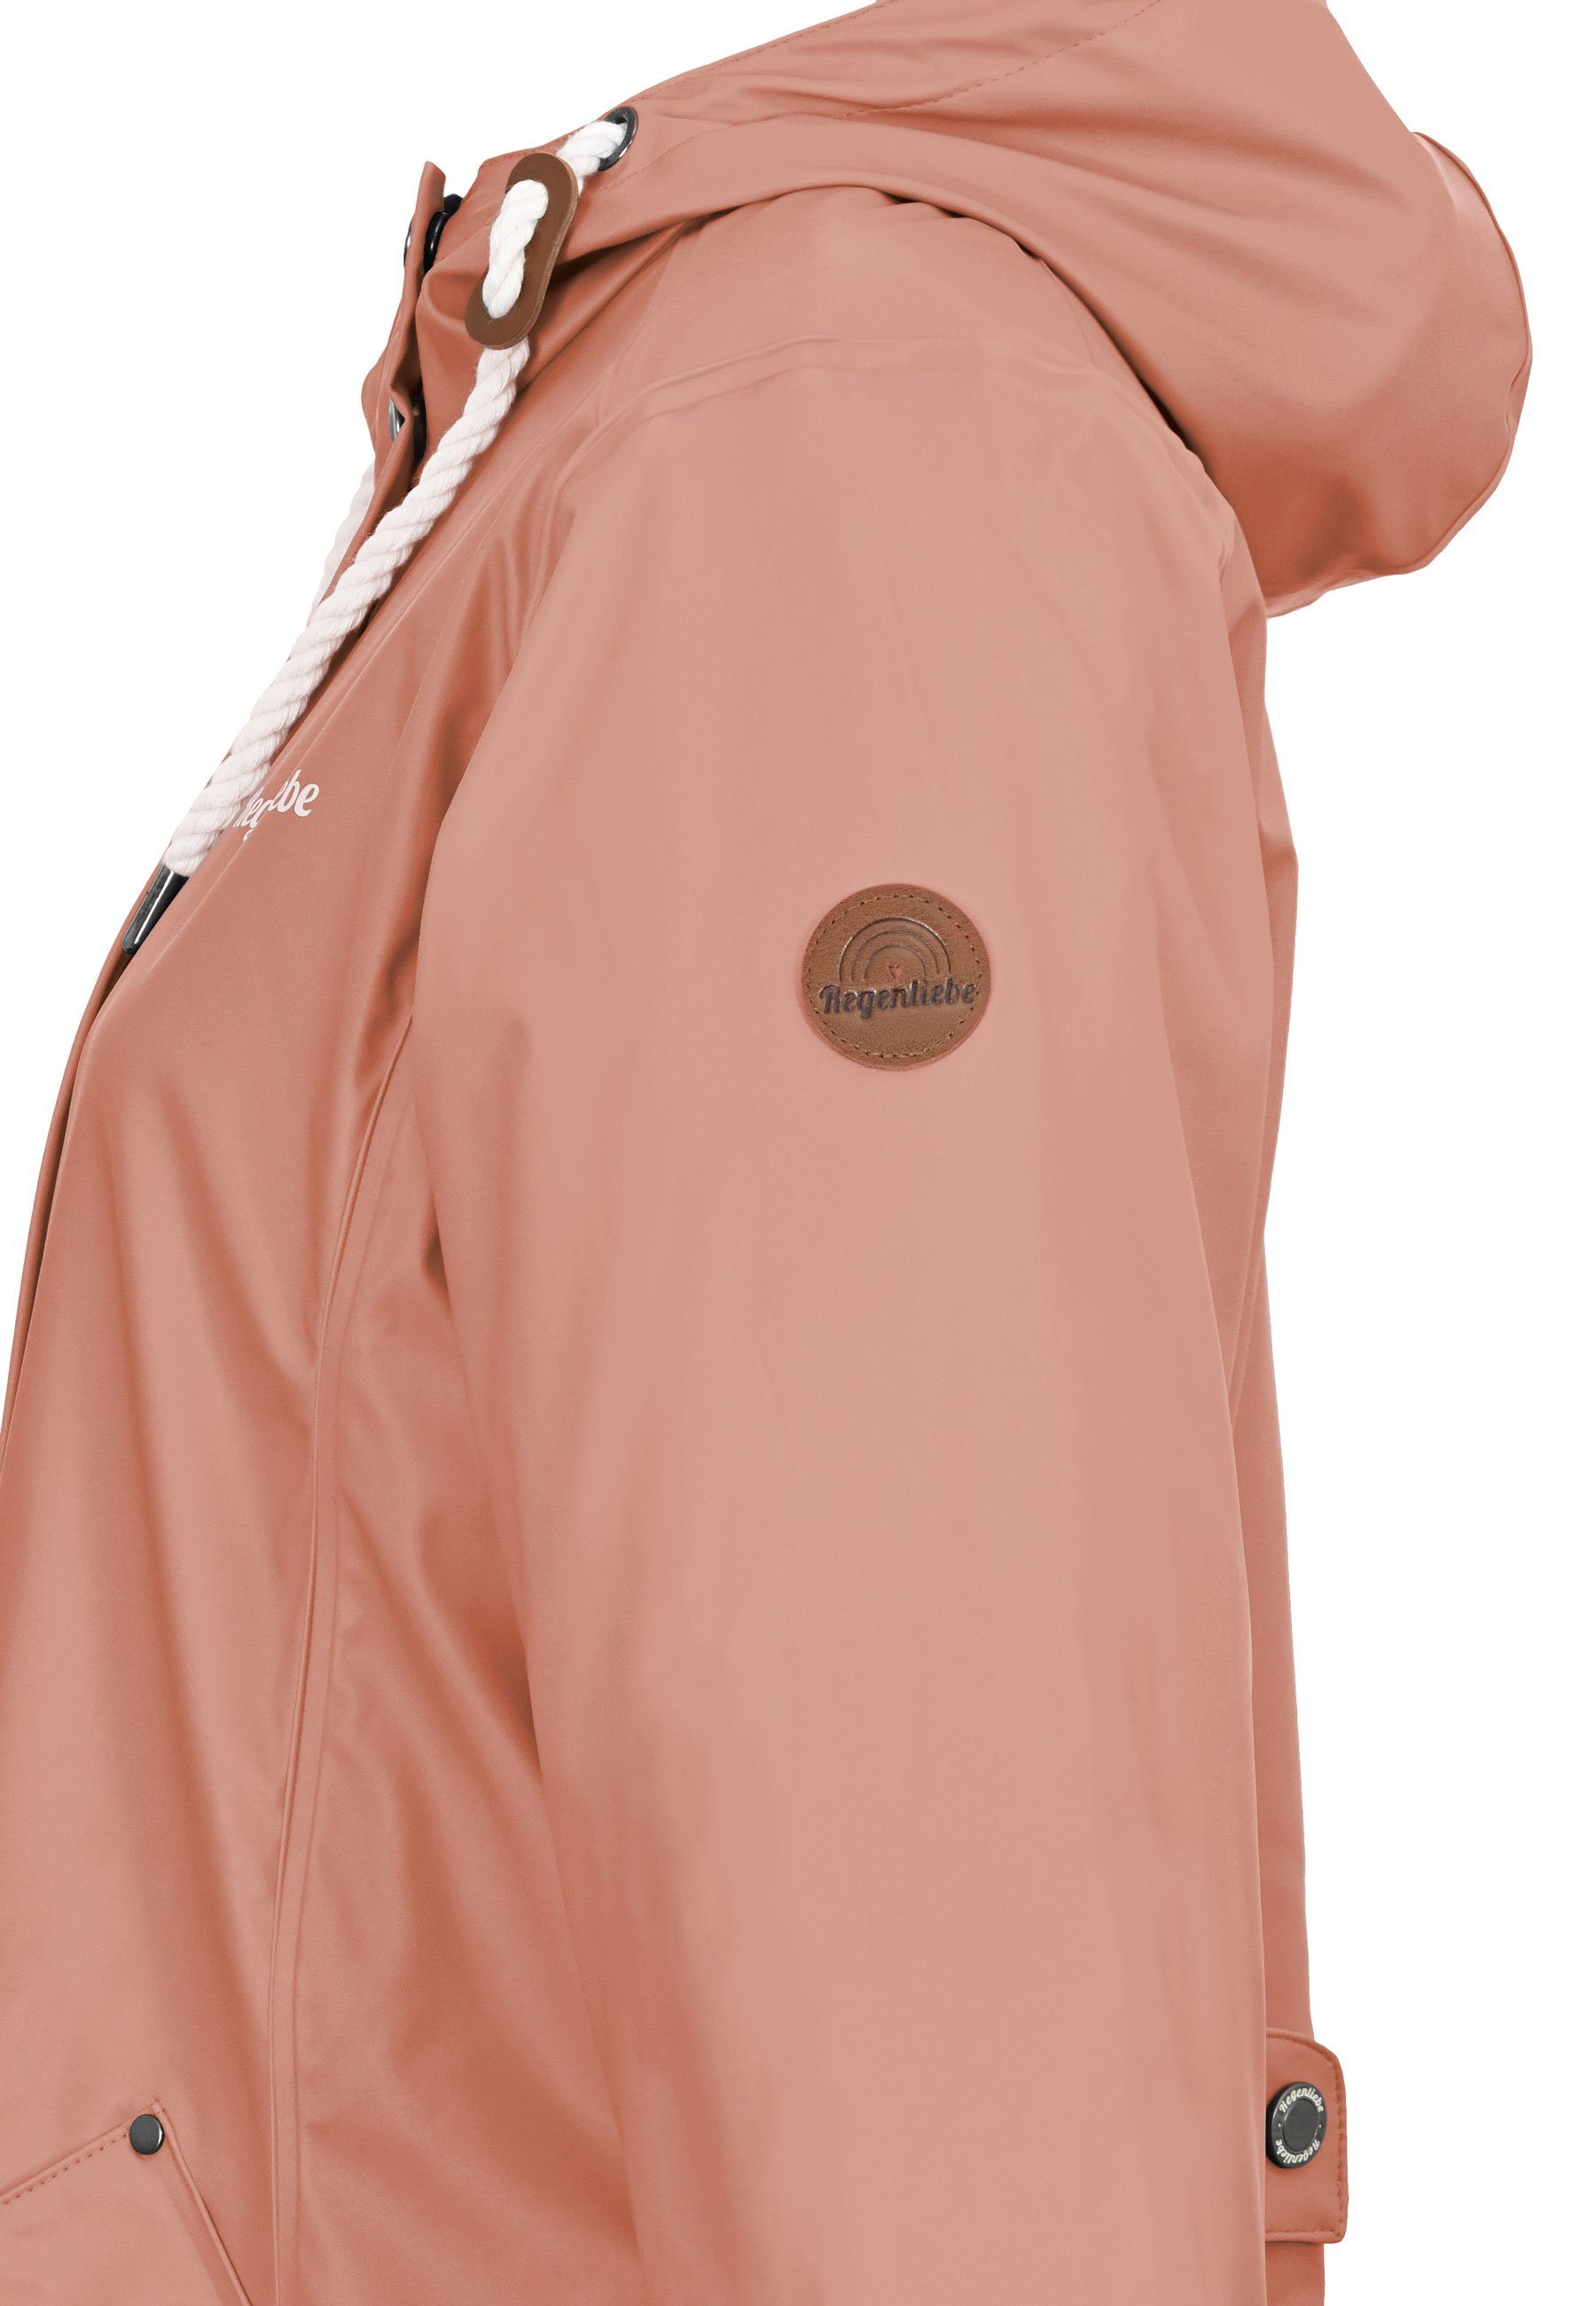 Regenliebe taillierter Kapuze mit Friesennerz Regenmantel alt-rosa verstellbaren Regenjacke